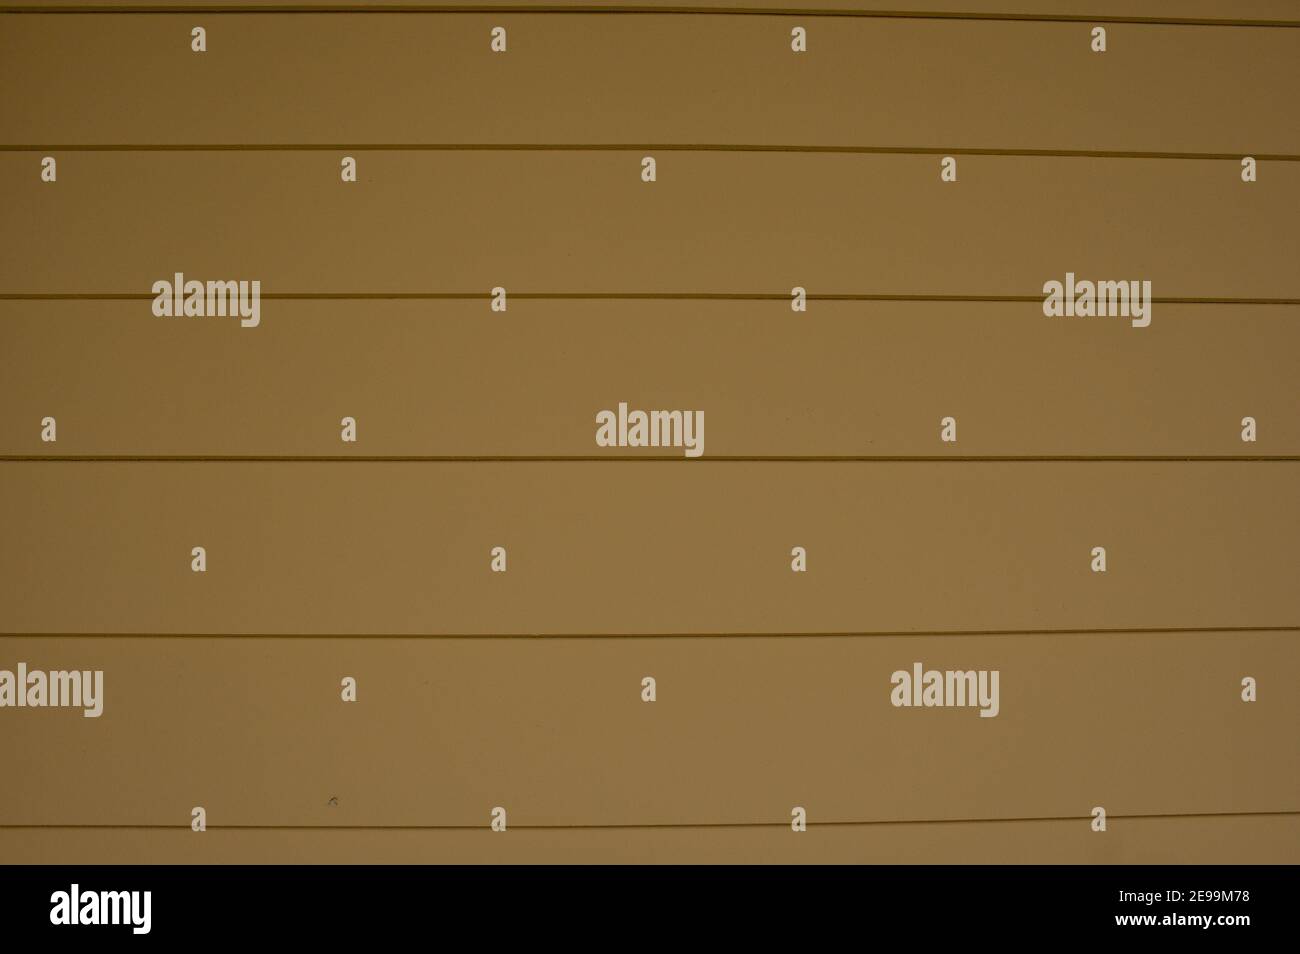 Pannelli laterali in legno verniciato giallo senza cuciture all'esterno di  un edificio; per l'uso come sfondi o diapositive di presentazione Foto  stock - Alamy